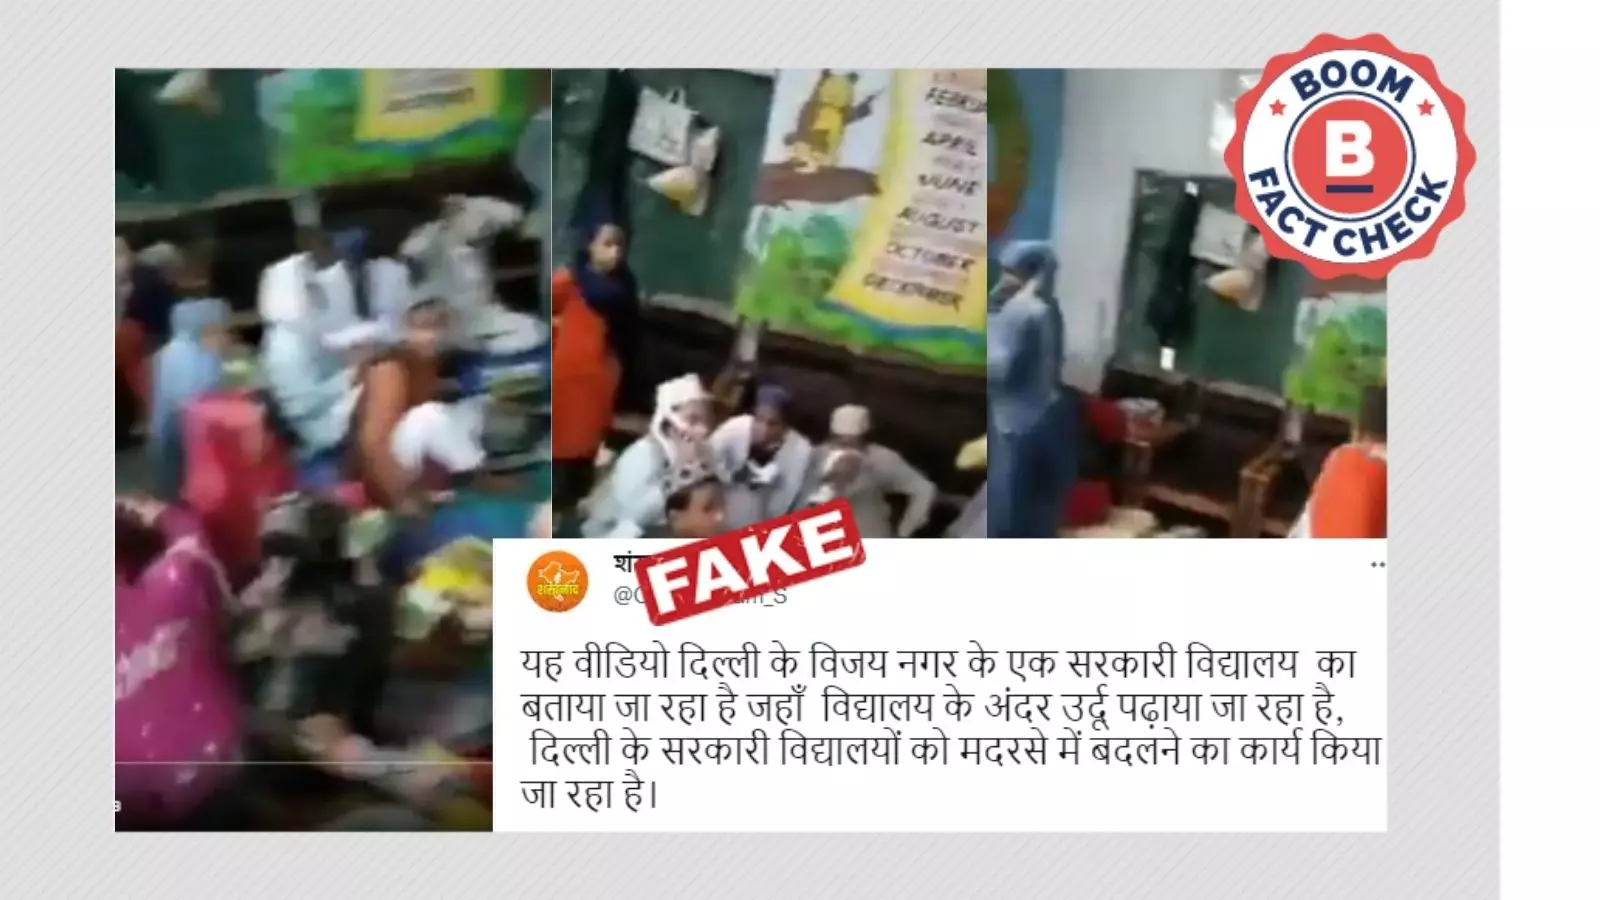 नहीं, यह वीडियो दिल्ली के सरकारी स्कूल को मदरसे में तब्दील होते नहीं दिखाता